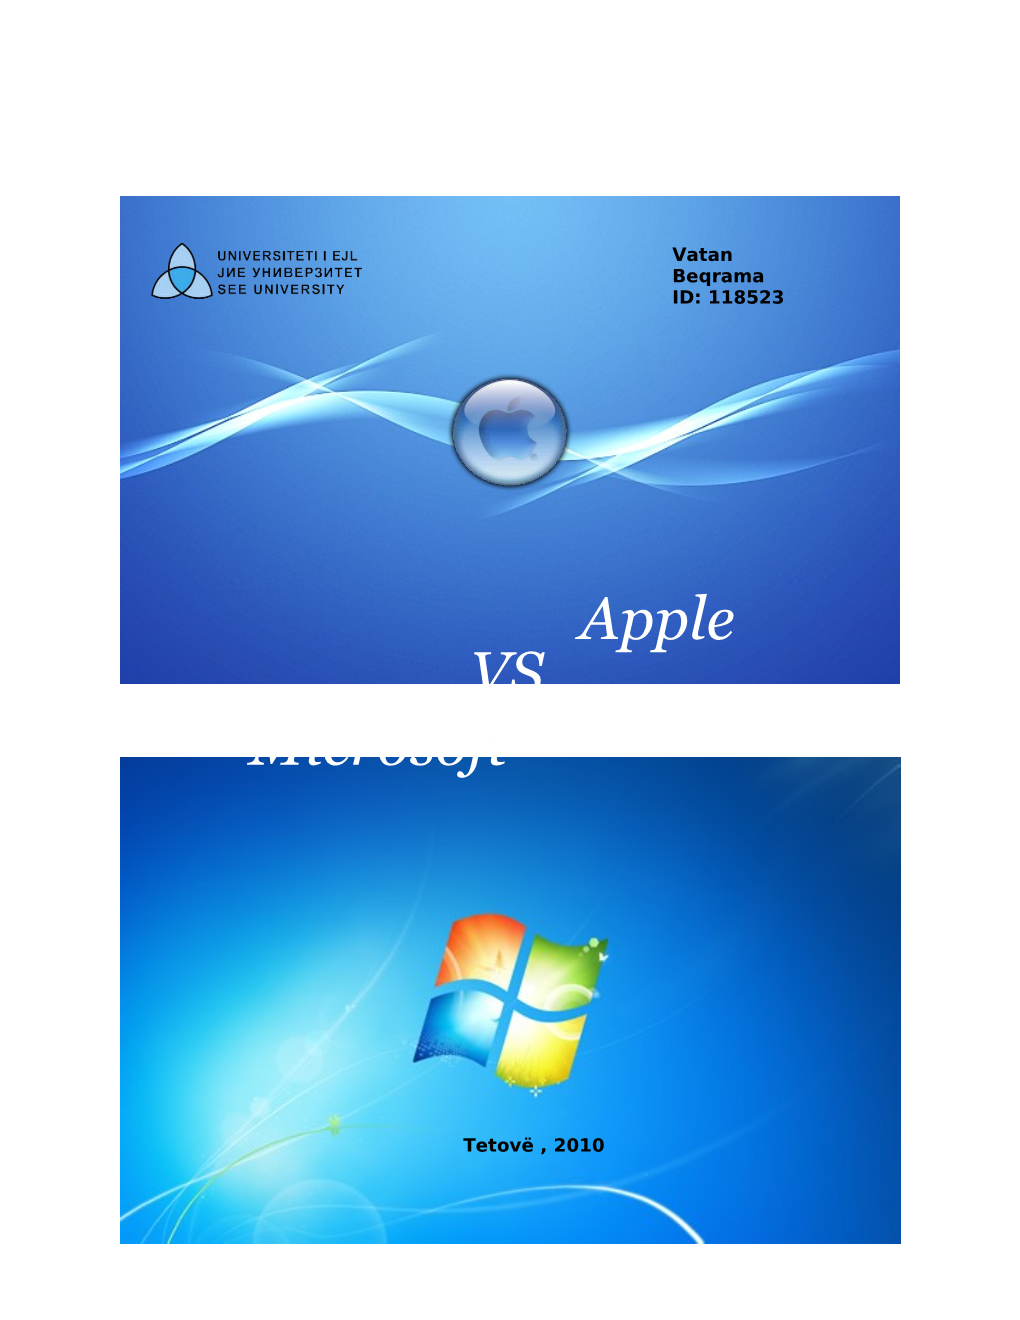 Microsoft Vs. Apple